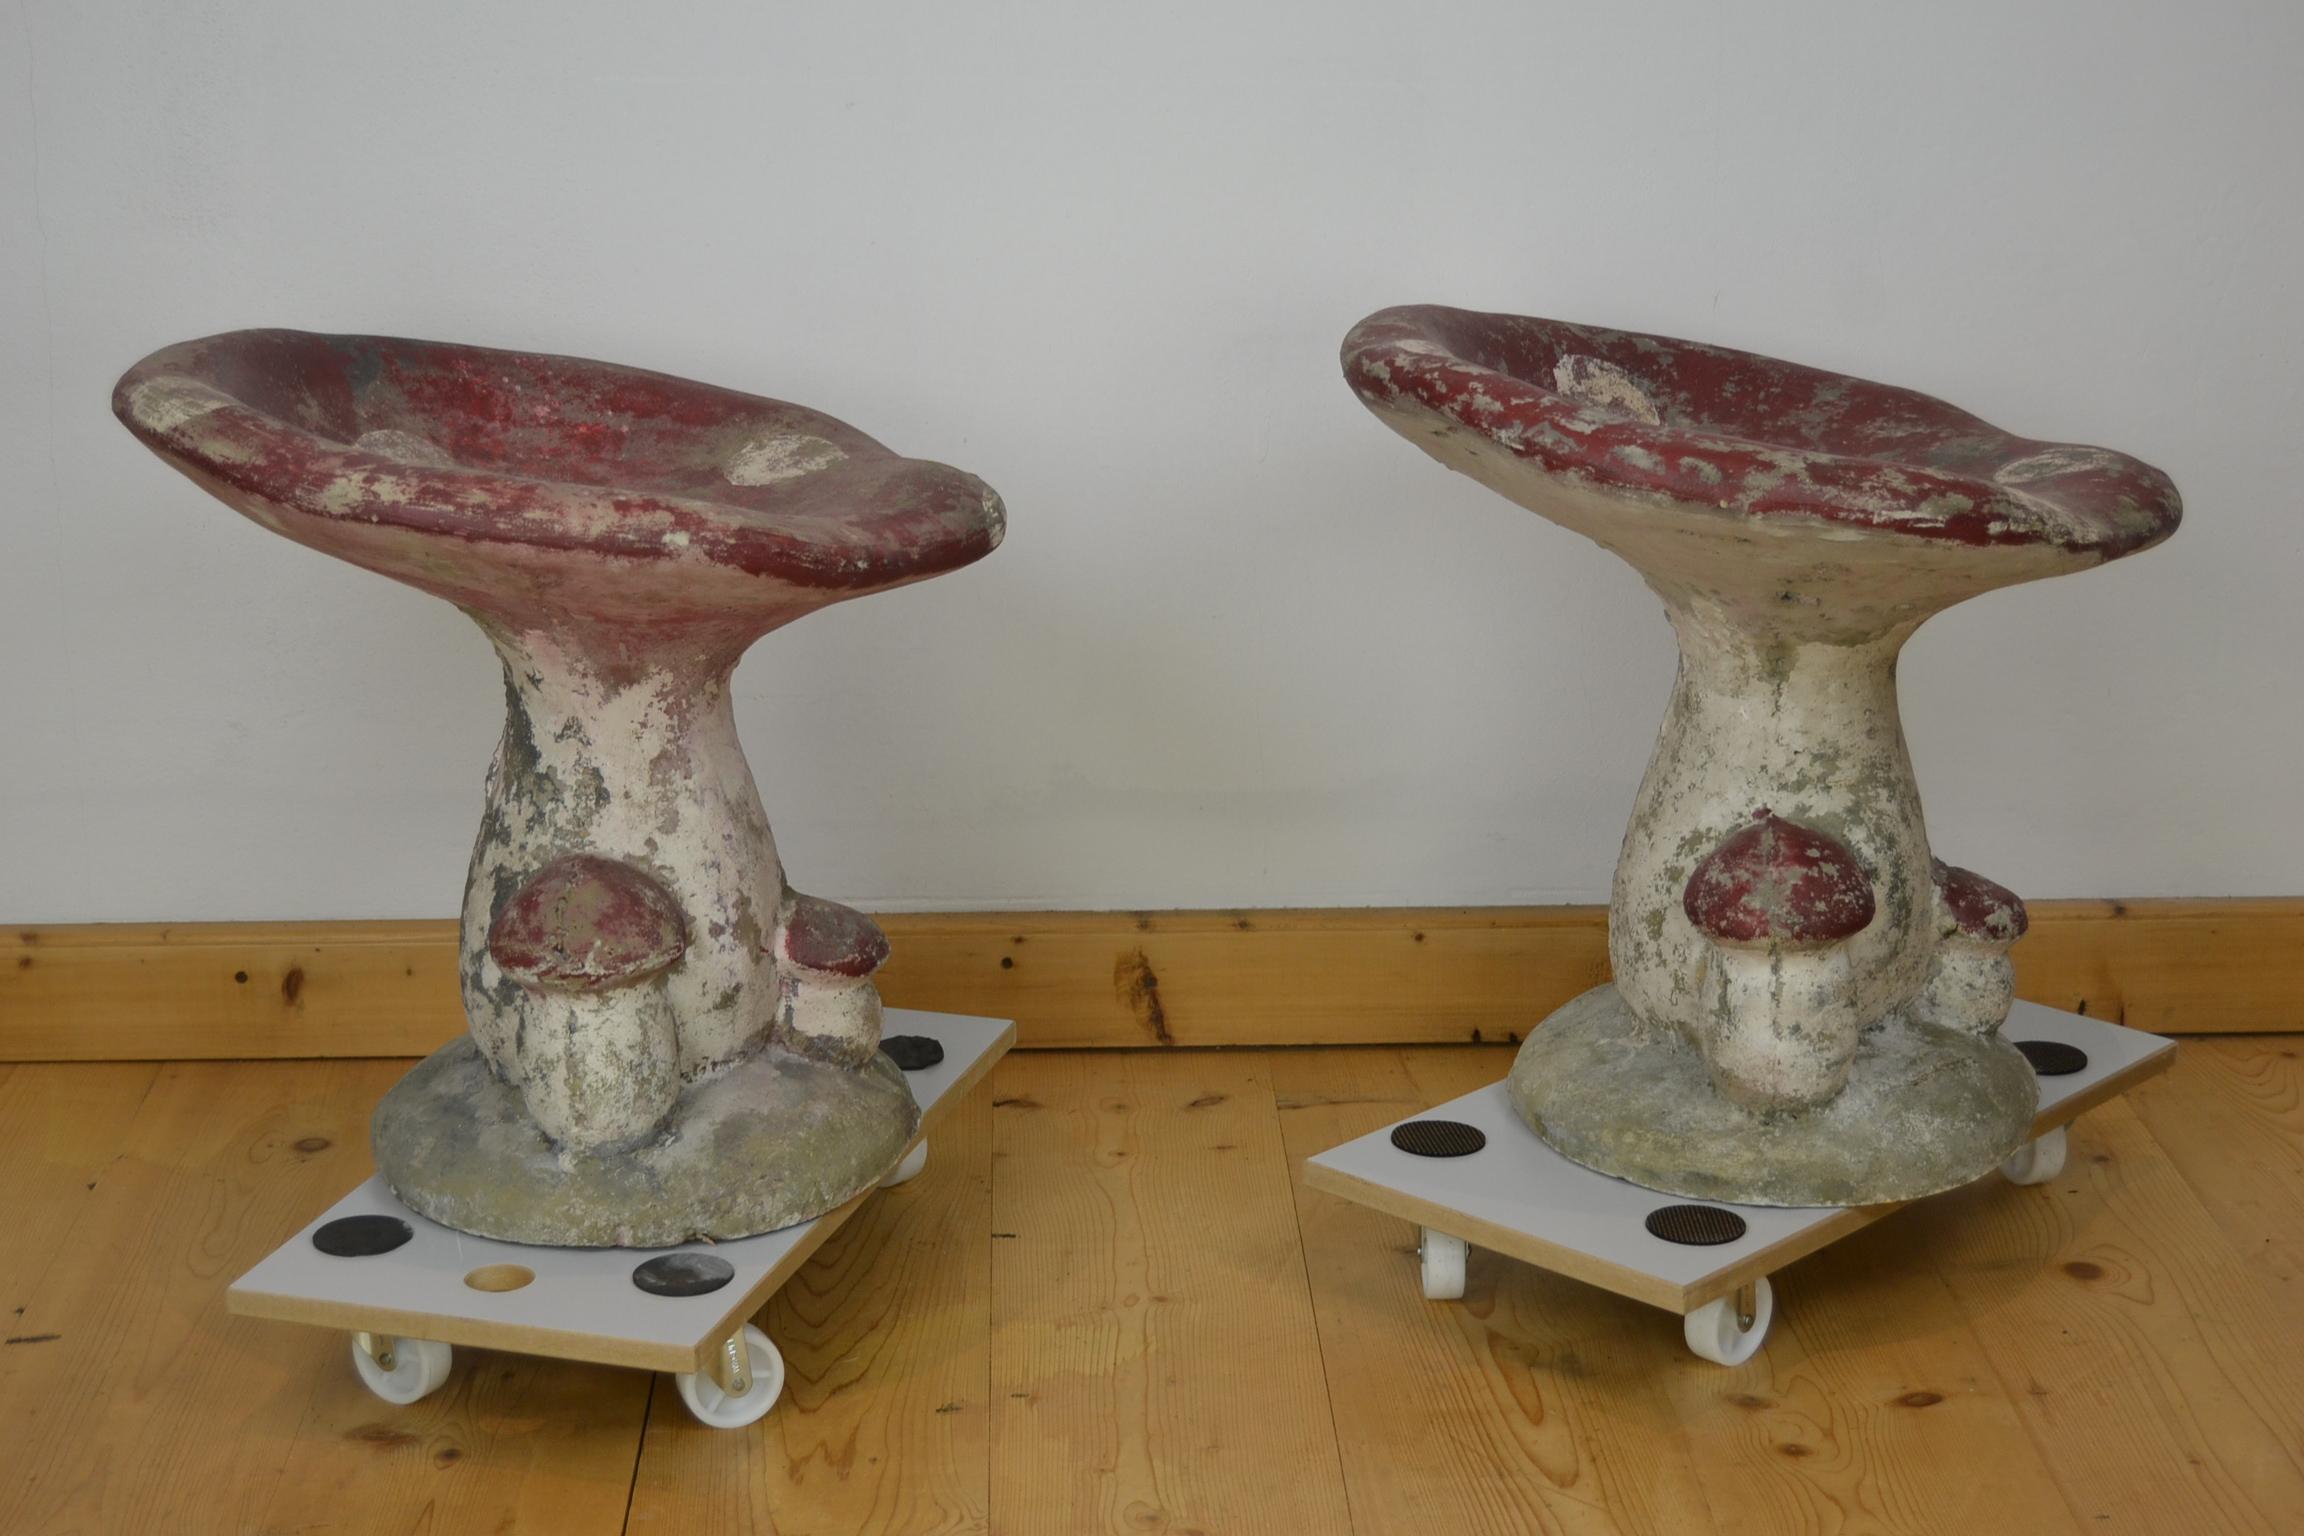 Concrete Garden Mushroom Seats or Garden Mushroom Stools, France 1